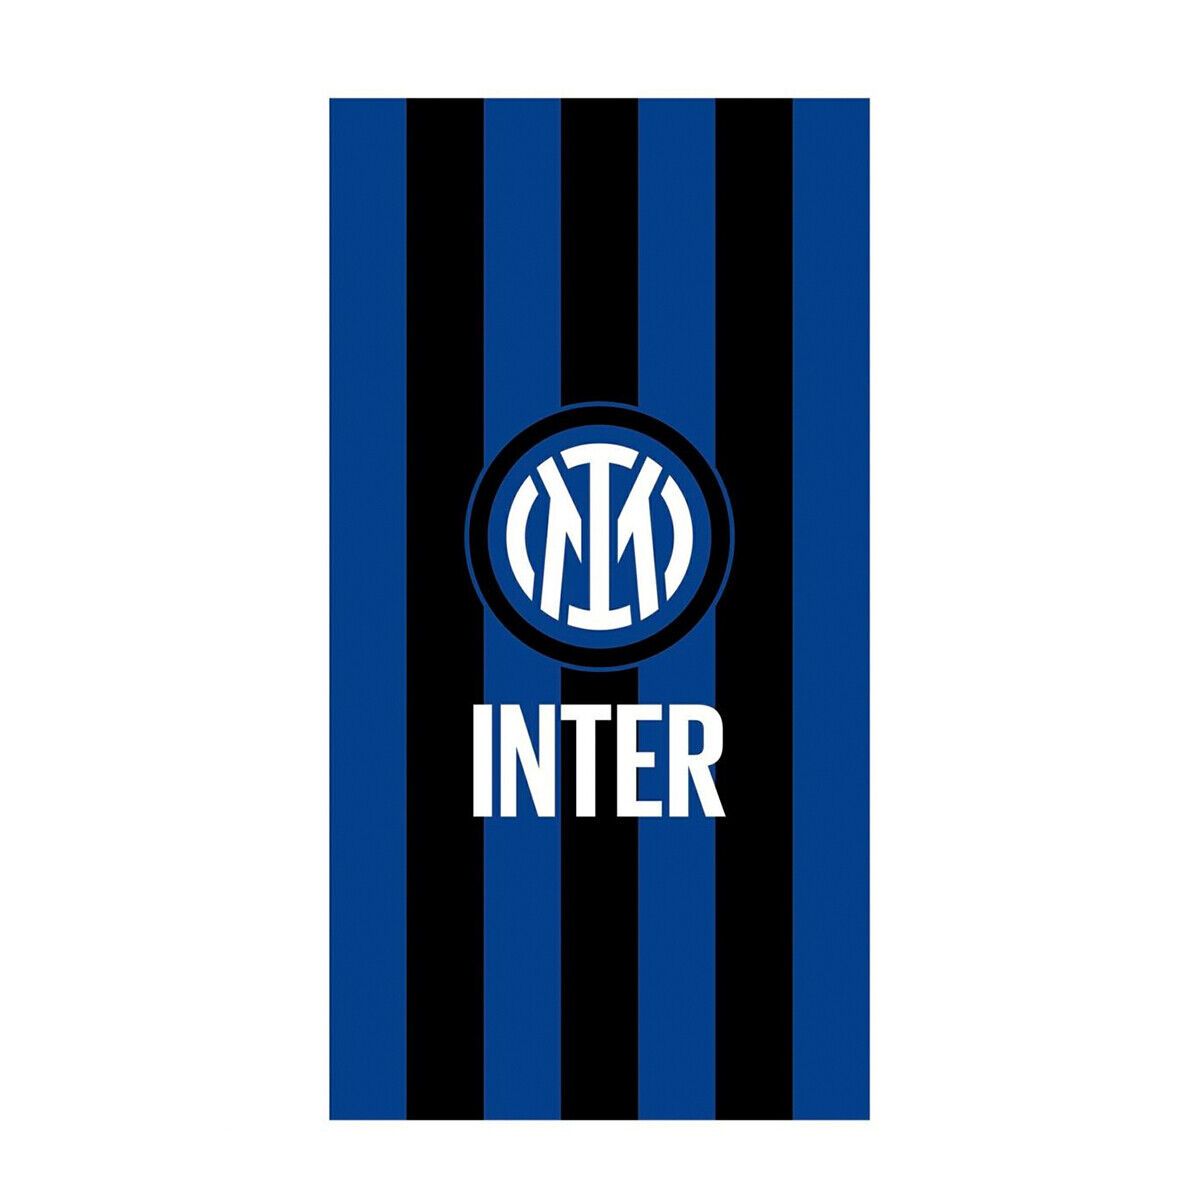 Telo mare F.C. Inter ufficiale spugna di cotone 90x170 cm K098